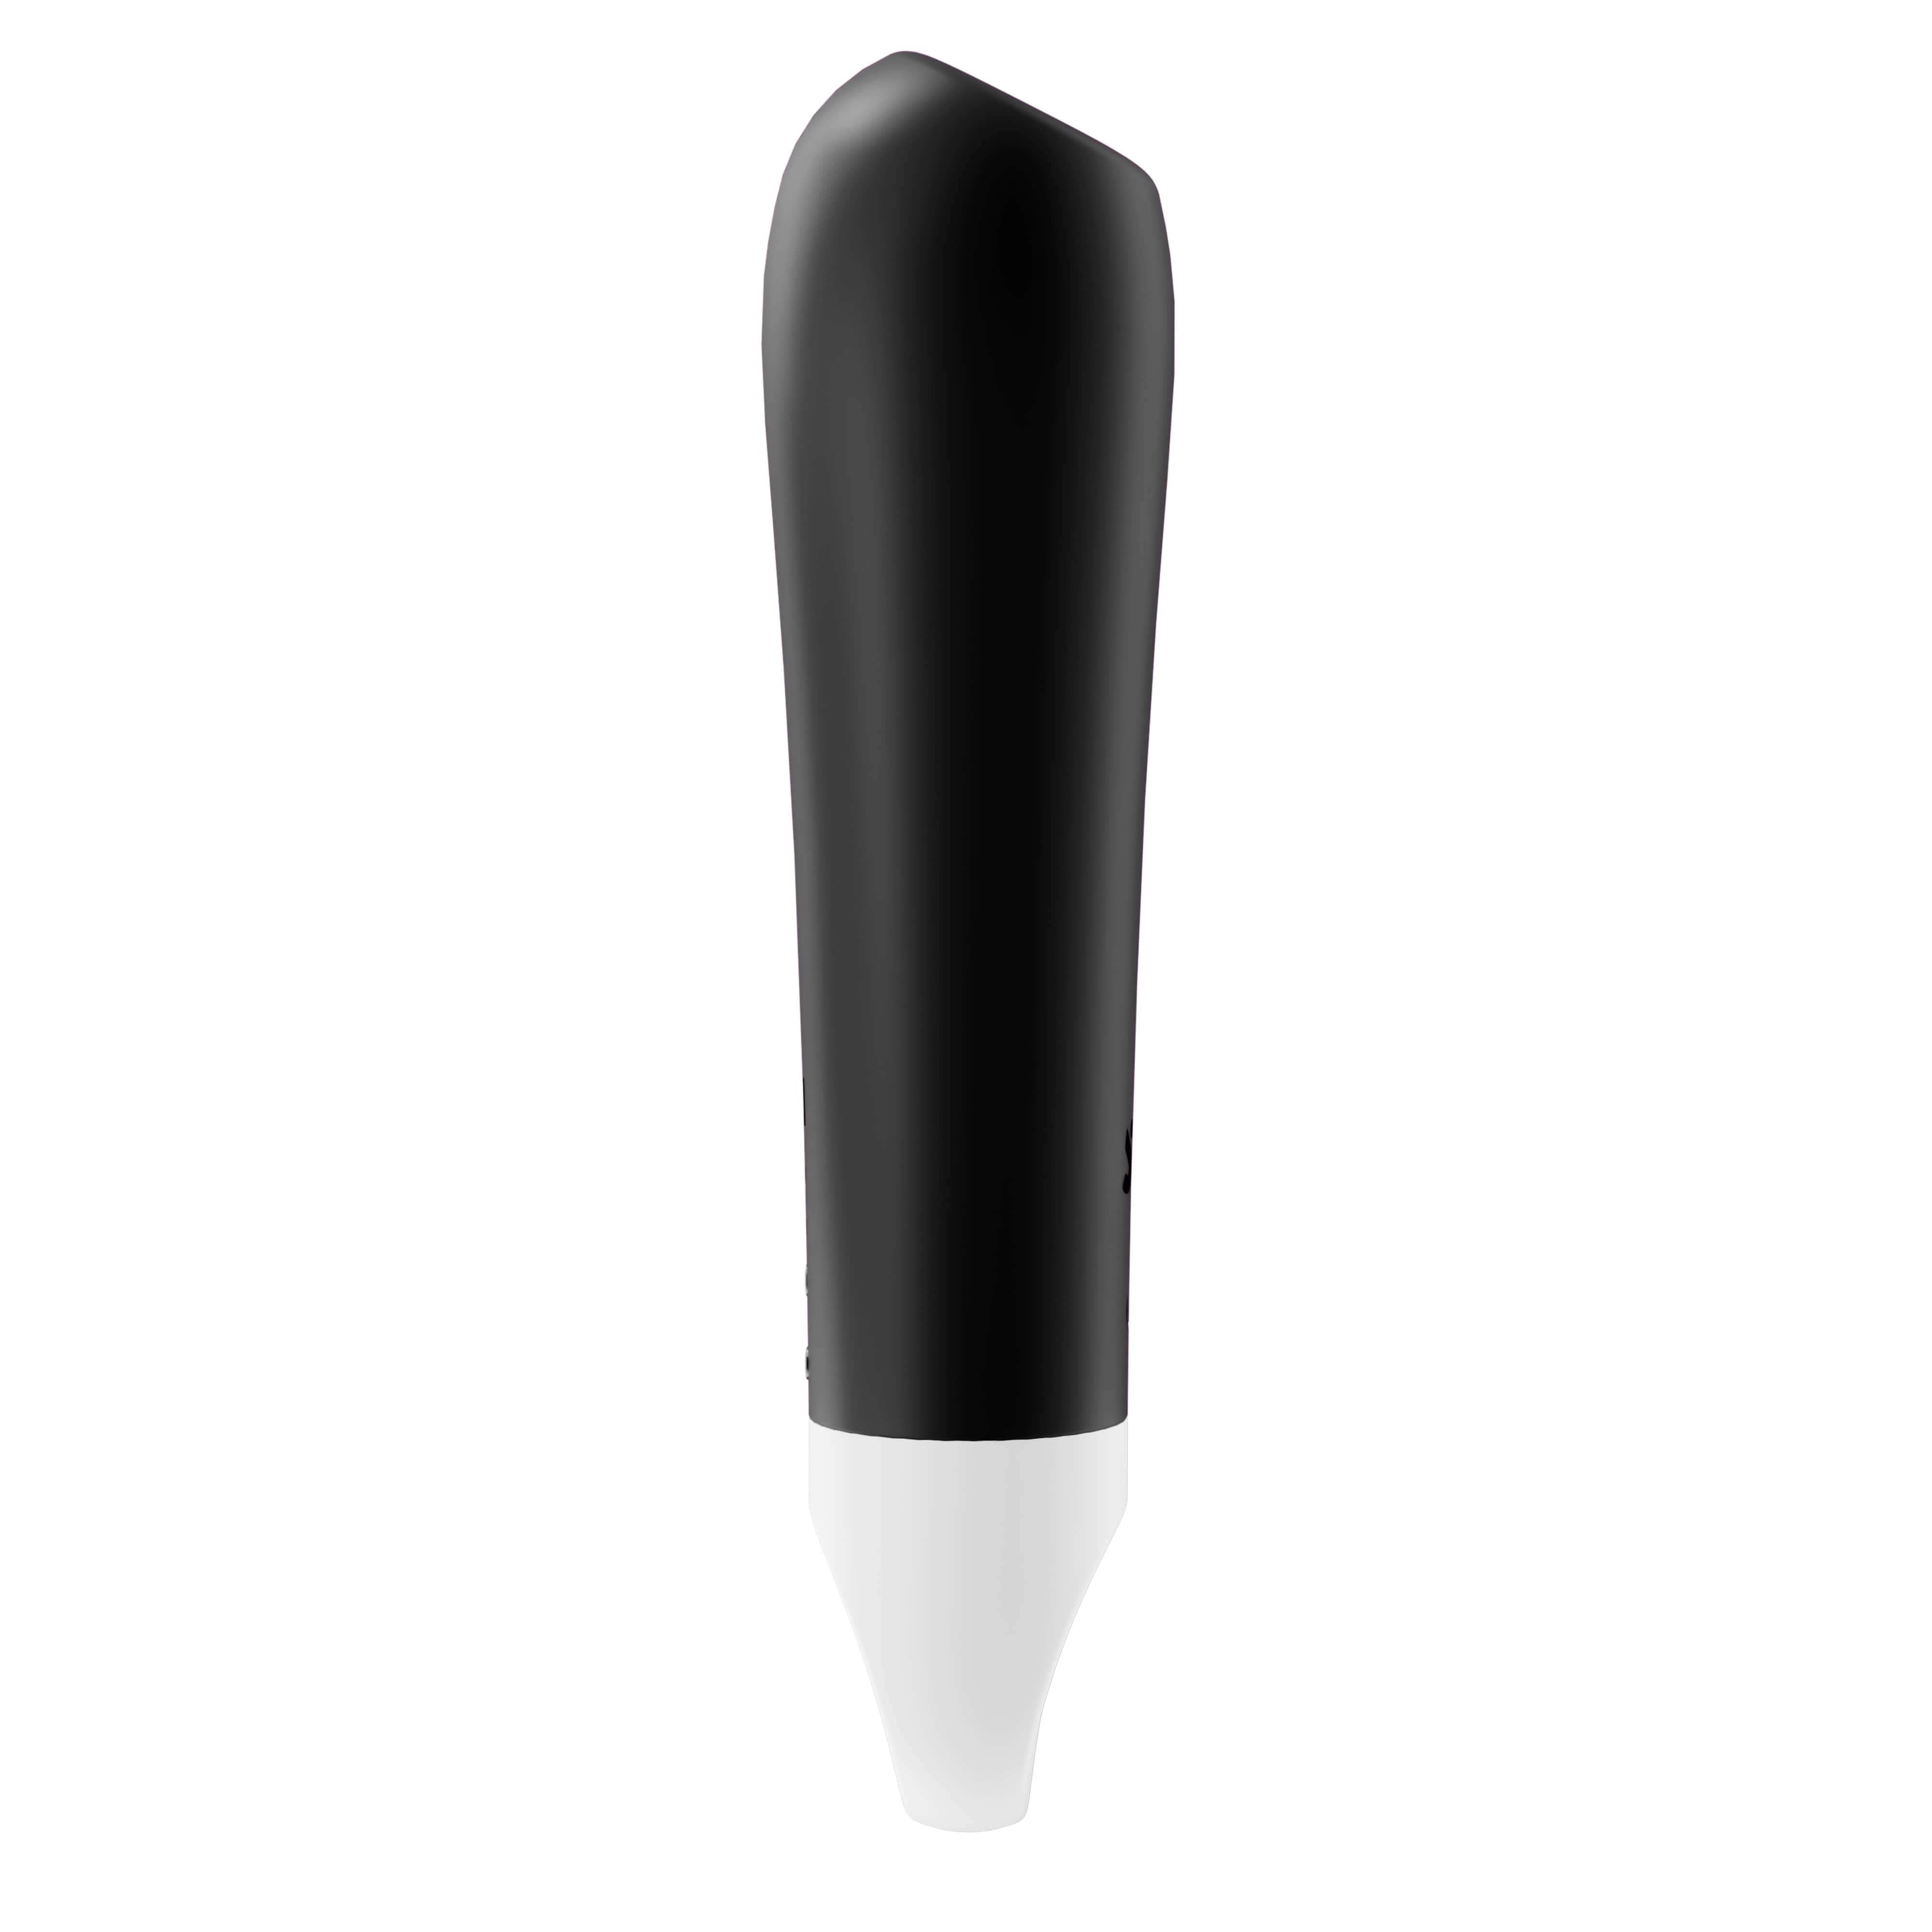 Satisfyer Ultra Power Bullet 2 - akkus, vízálló vibrátor (fekete) Kicsi vibrátor kép